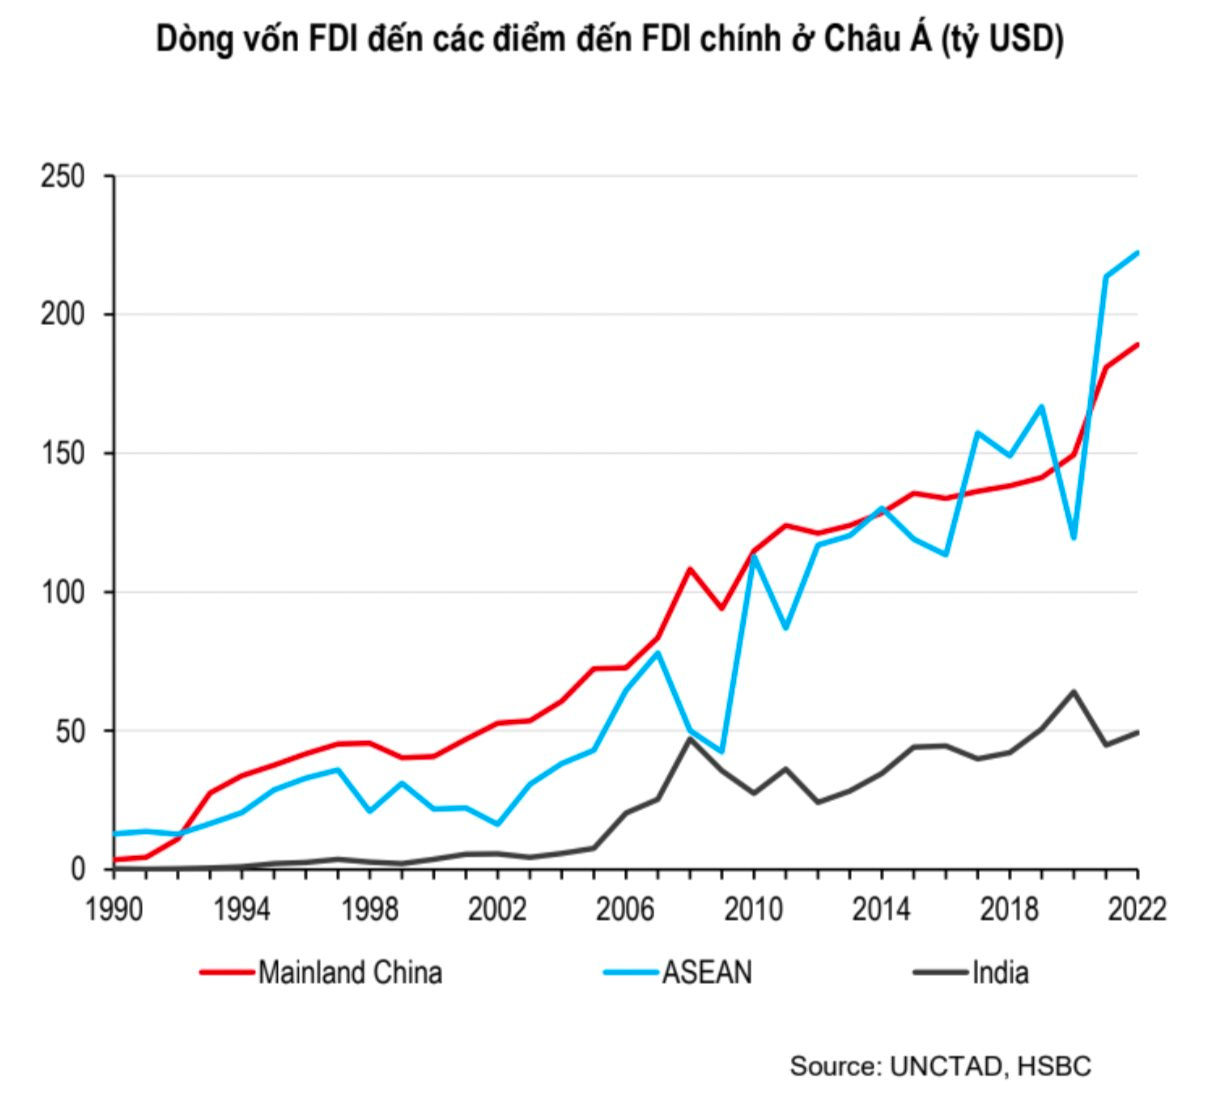 Các sếp tài chính tranh luận: 15 năm trước DN FDI đến Việt Nam đòi ưu đãi thuế, 10 năm trước hỏi chi phí nhân công, nay họ quan tâm gì? - Ảnh 2.